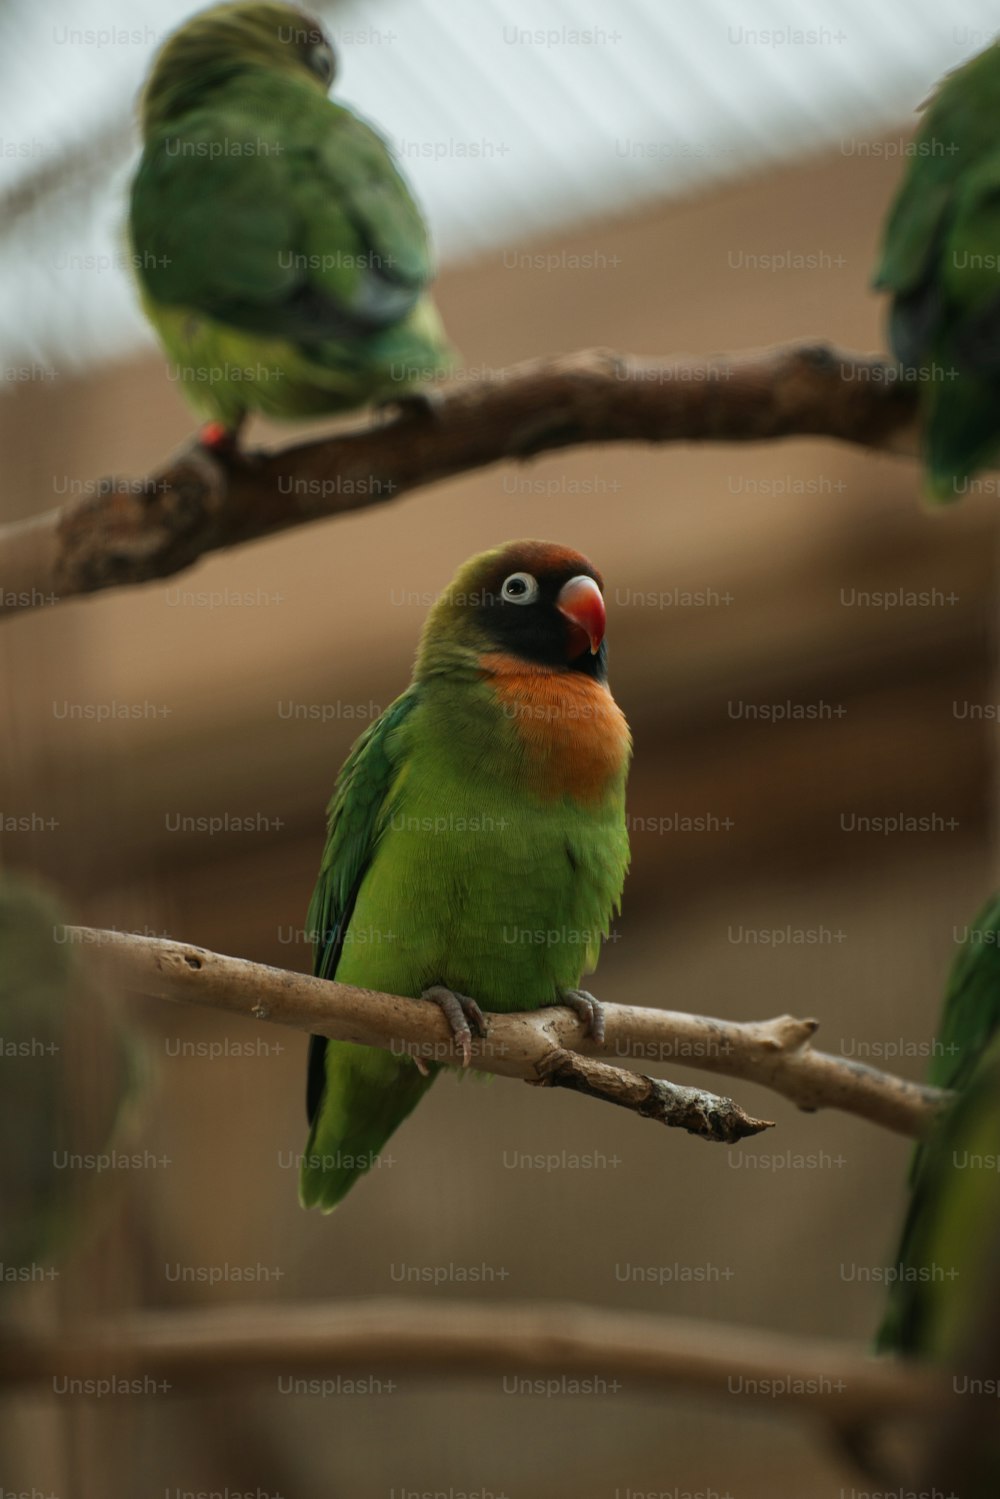 나뭇가지 위에 앉아 있는 녹색 새들